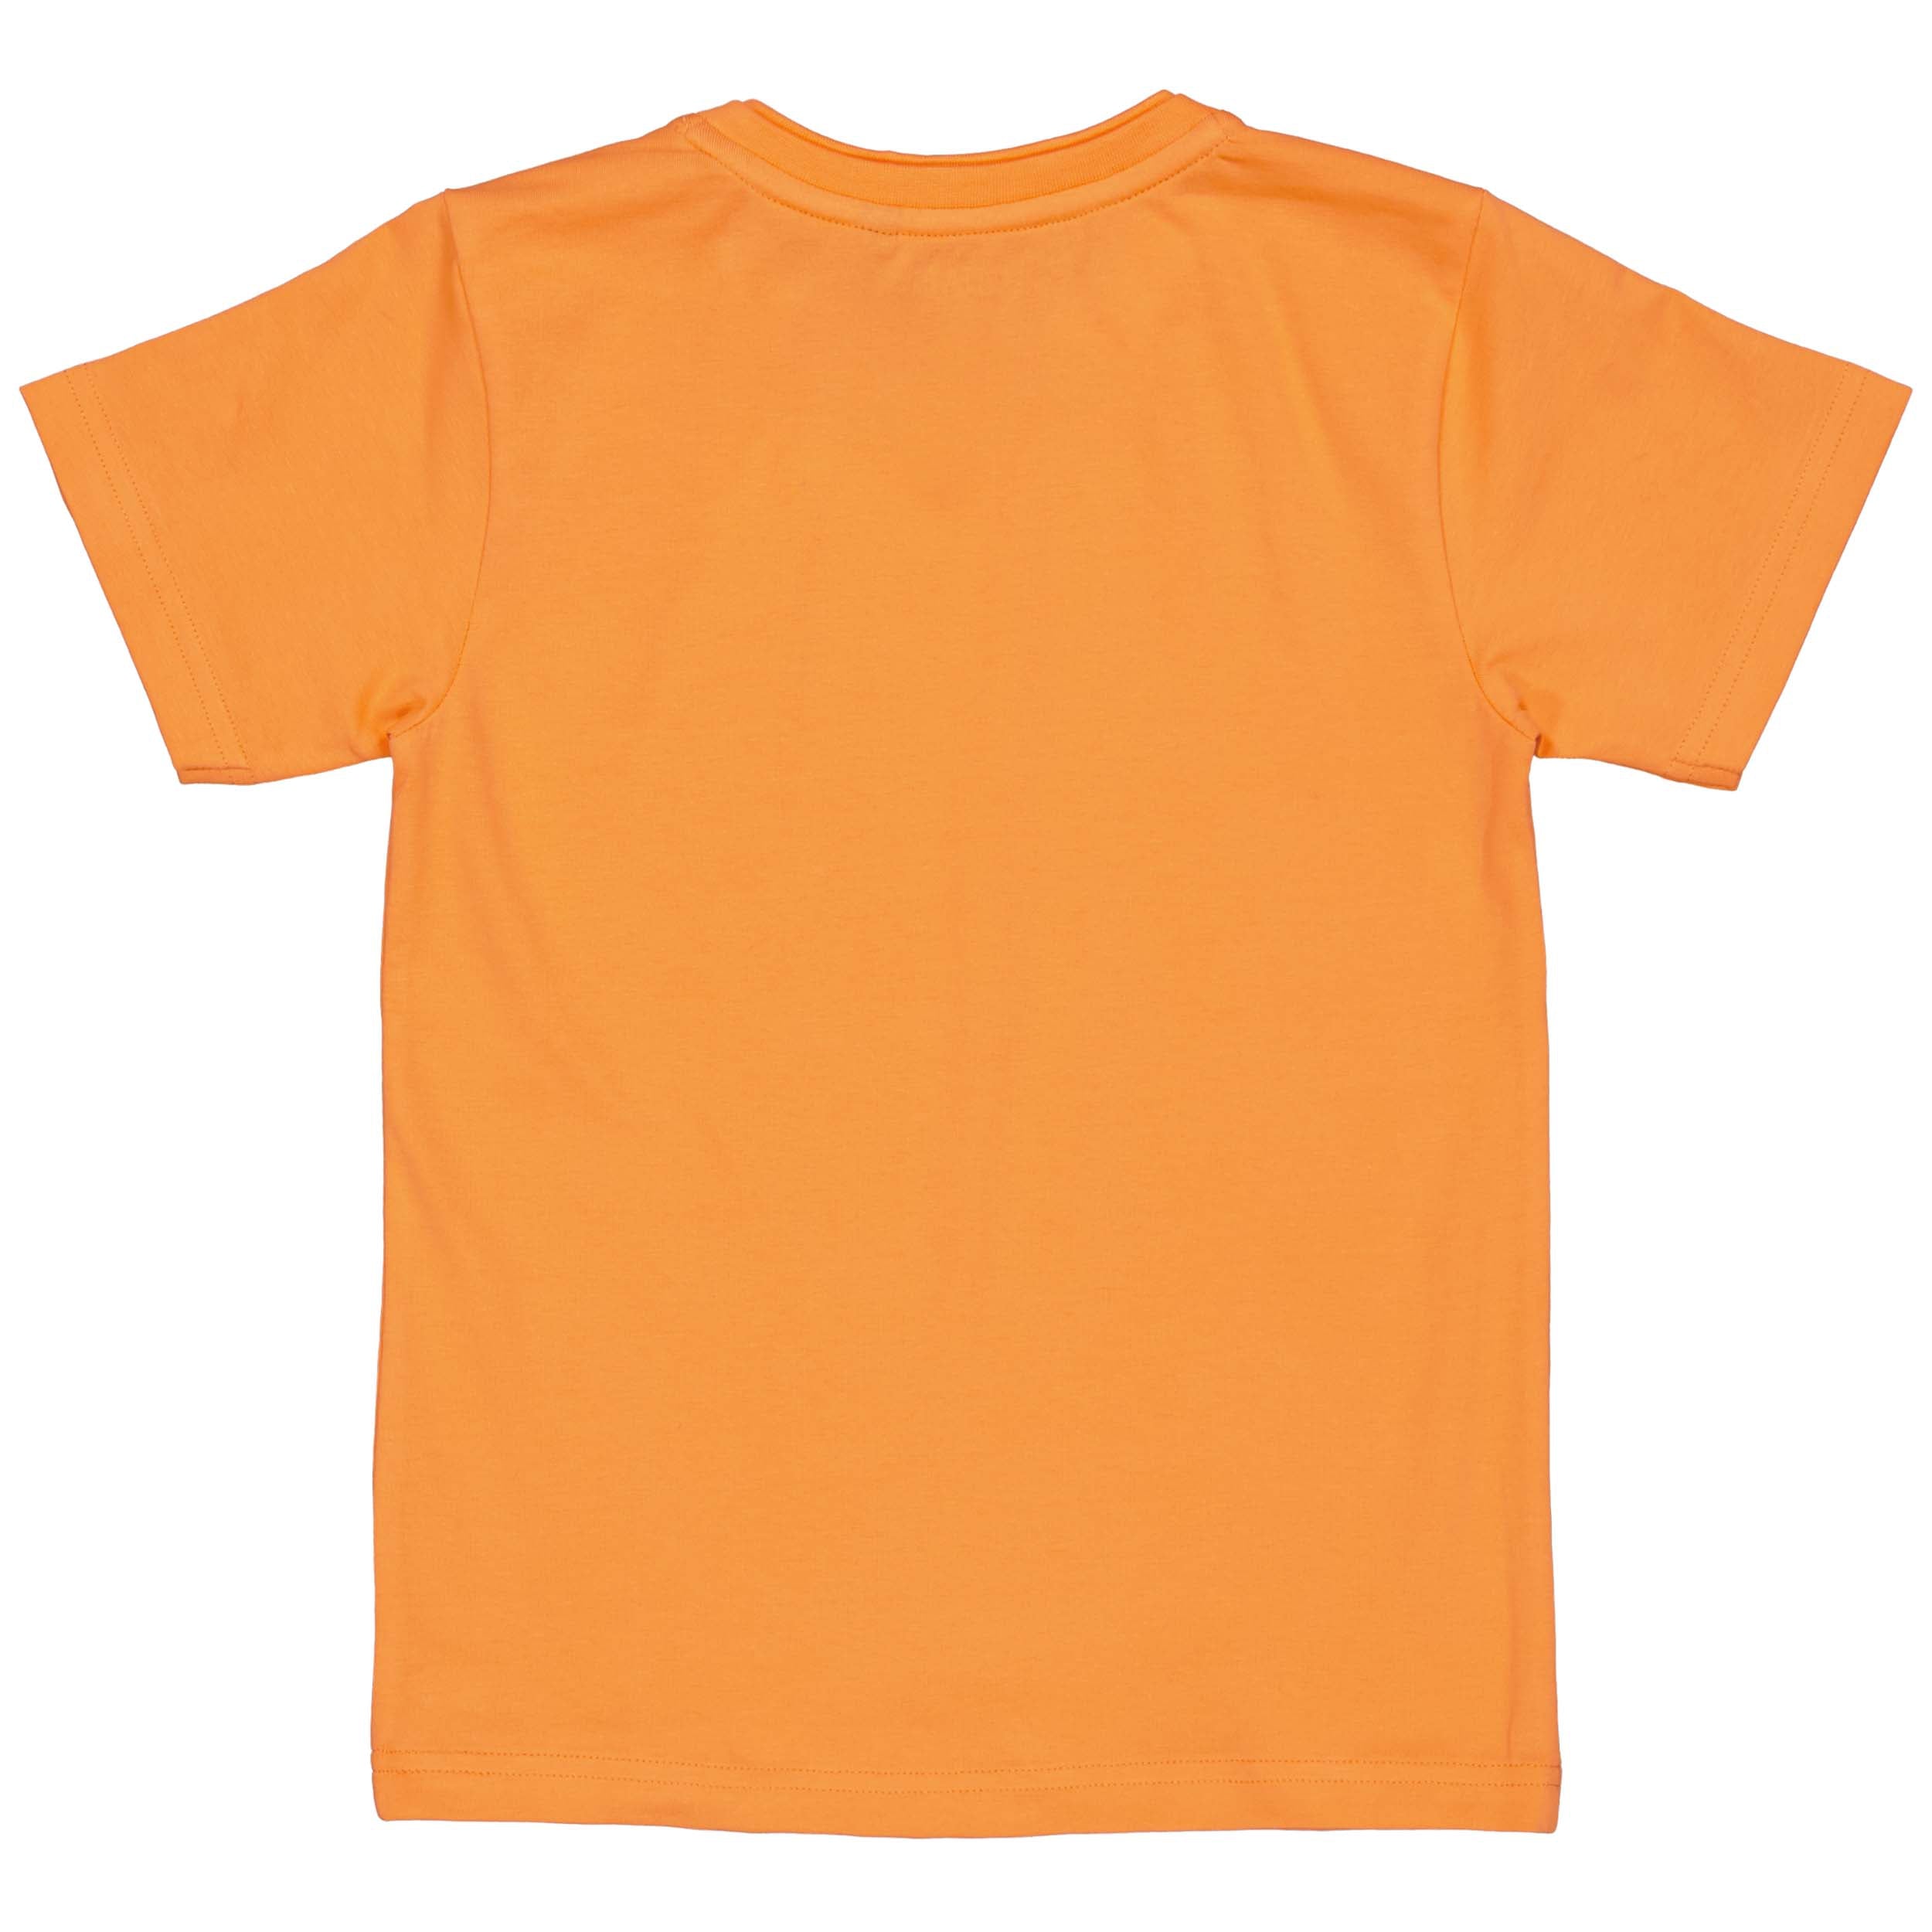 Jongens Shortsleeve BENNEQS242 van Quapi in de kleur Orange in maat 122-128.